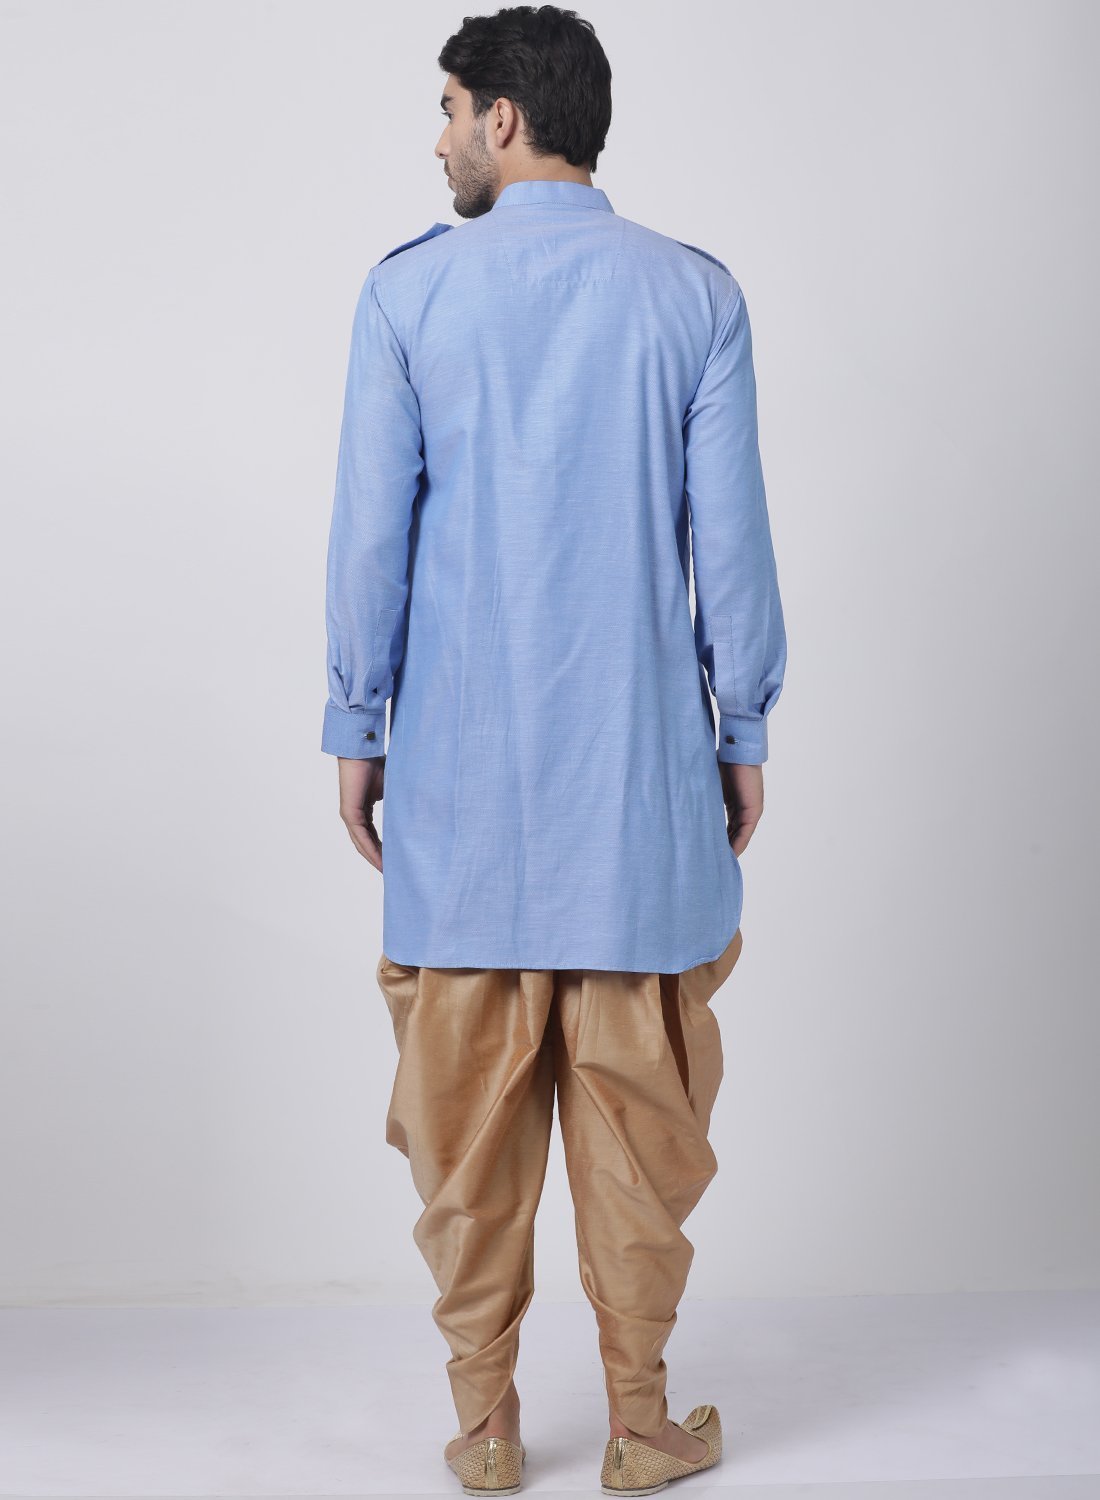 Men's Blue Cotton Blend Kurta and Dhoti Pant Set